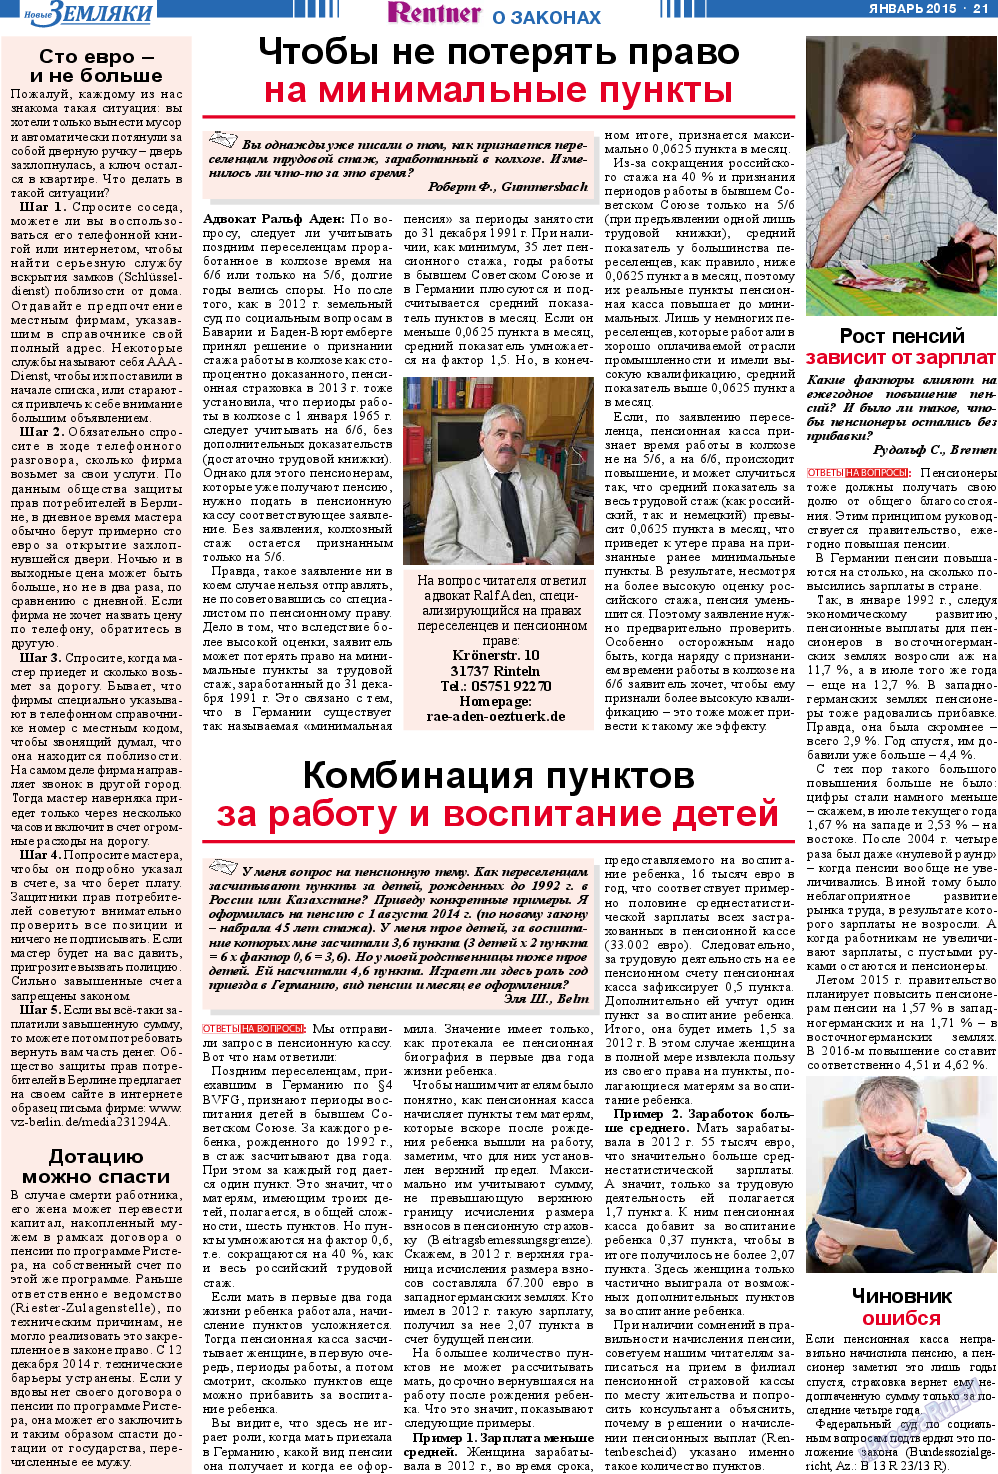 Новые Земляки, газета. 2015 №1 стр.21